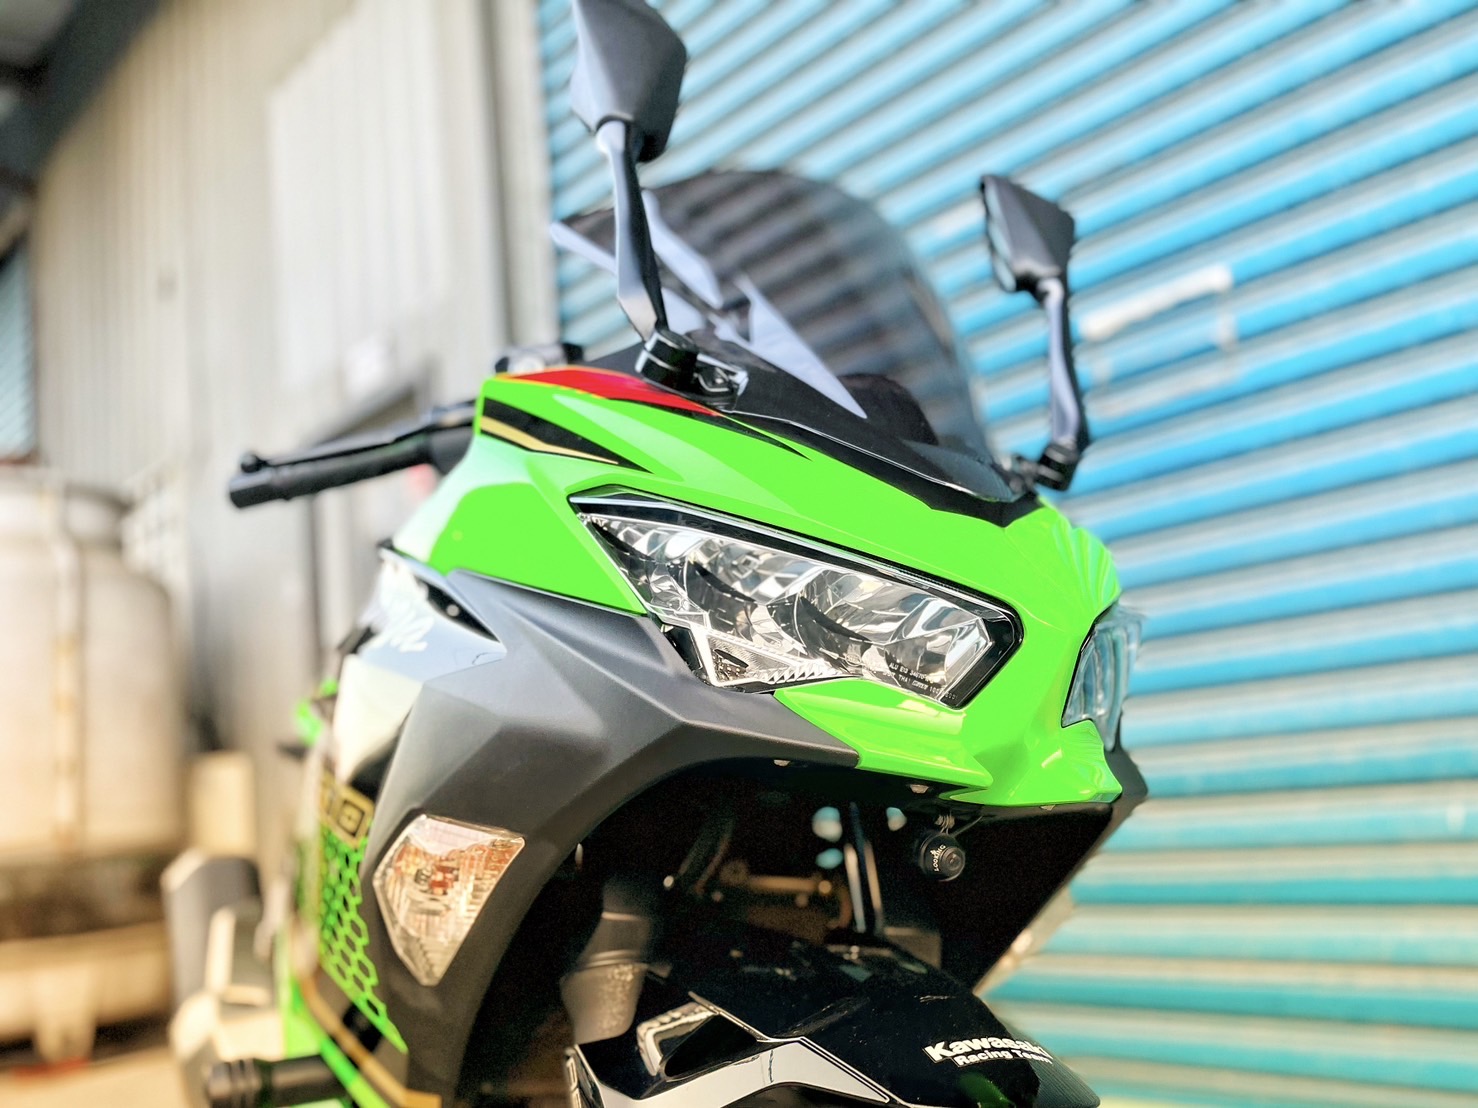 【小資族二手重機買賣】KAWASAKI NINJA400 - 「Webike-摩托車市」 里程保證 無摔無事故 基本改裝 小資族二手重機買賣